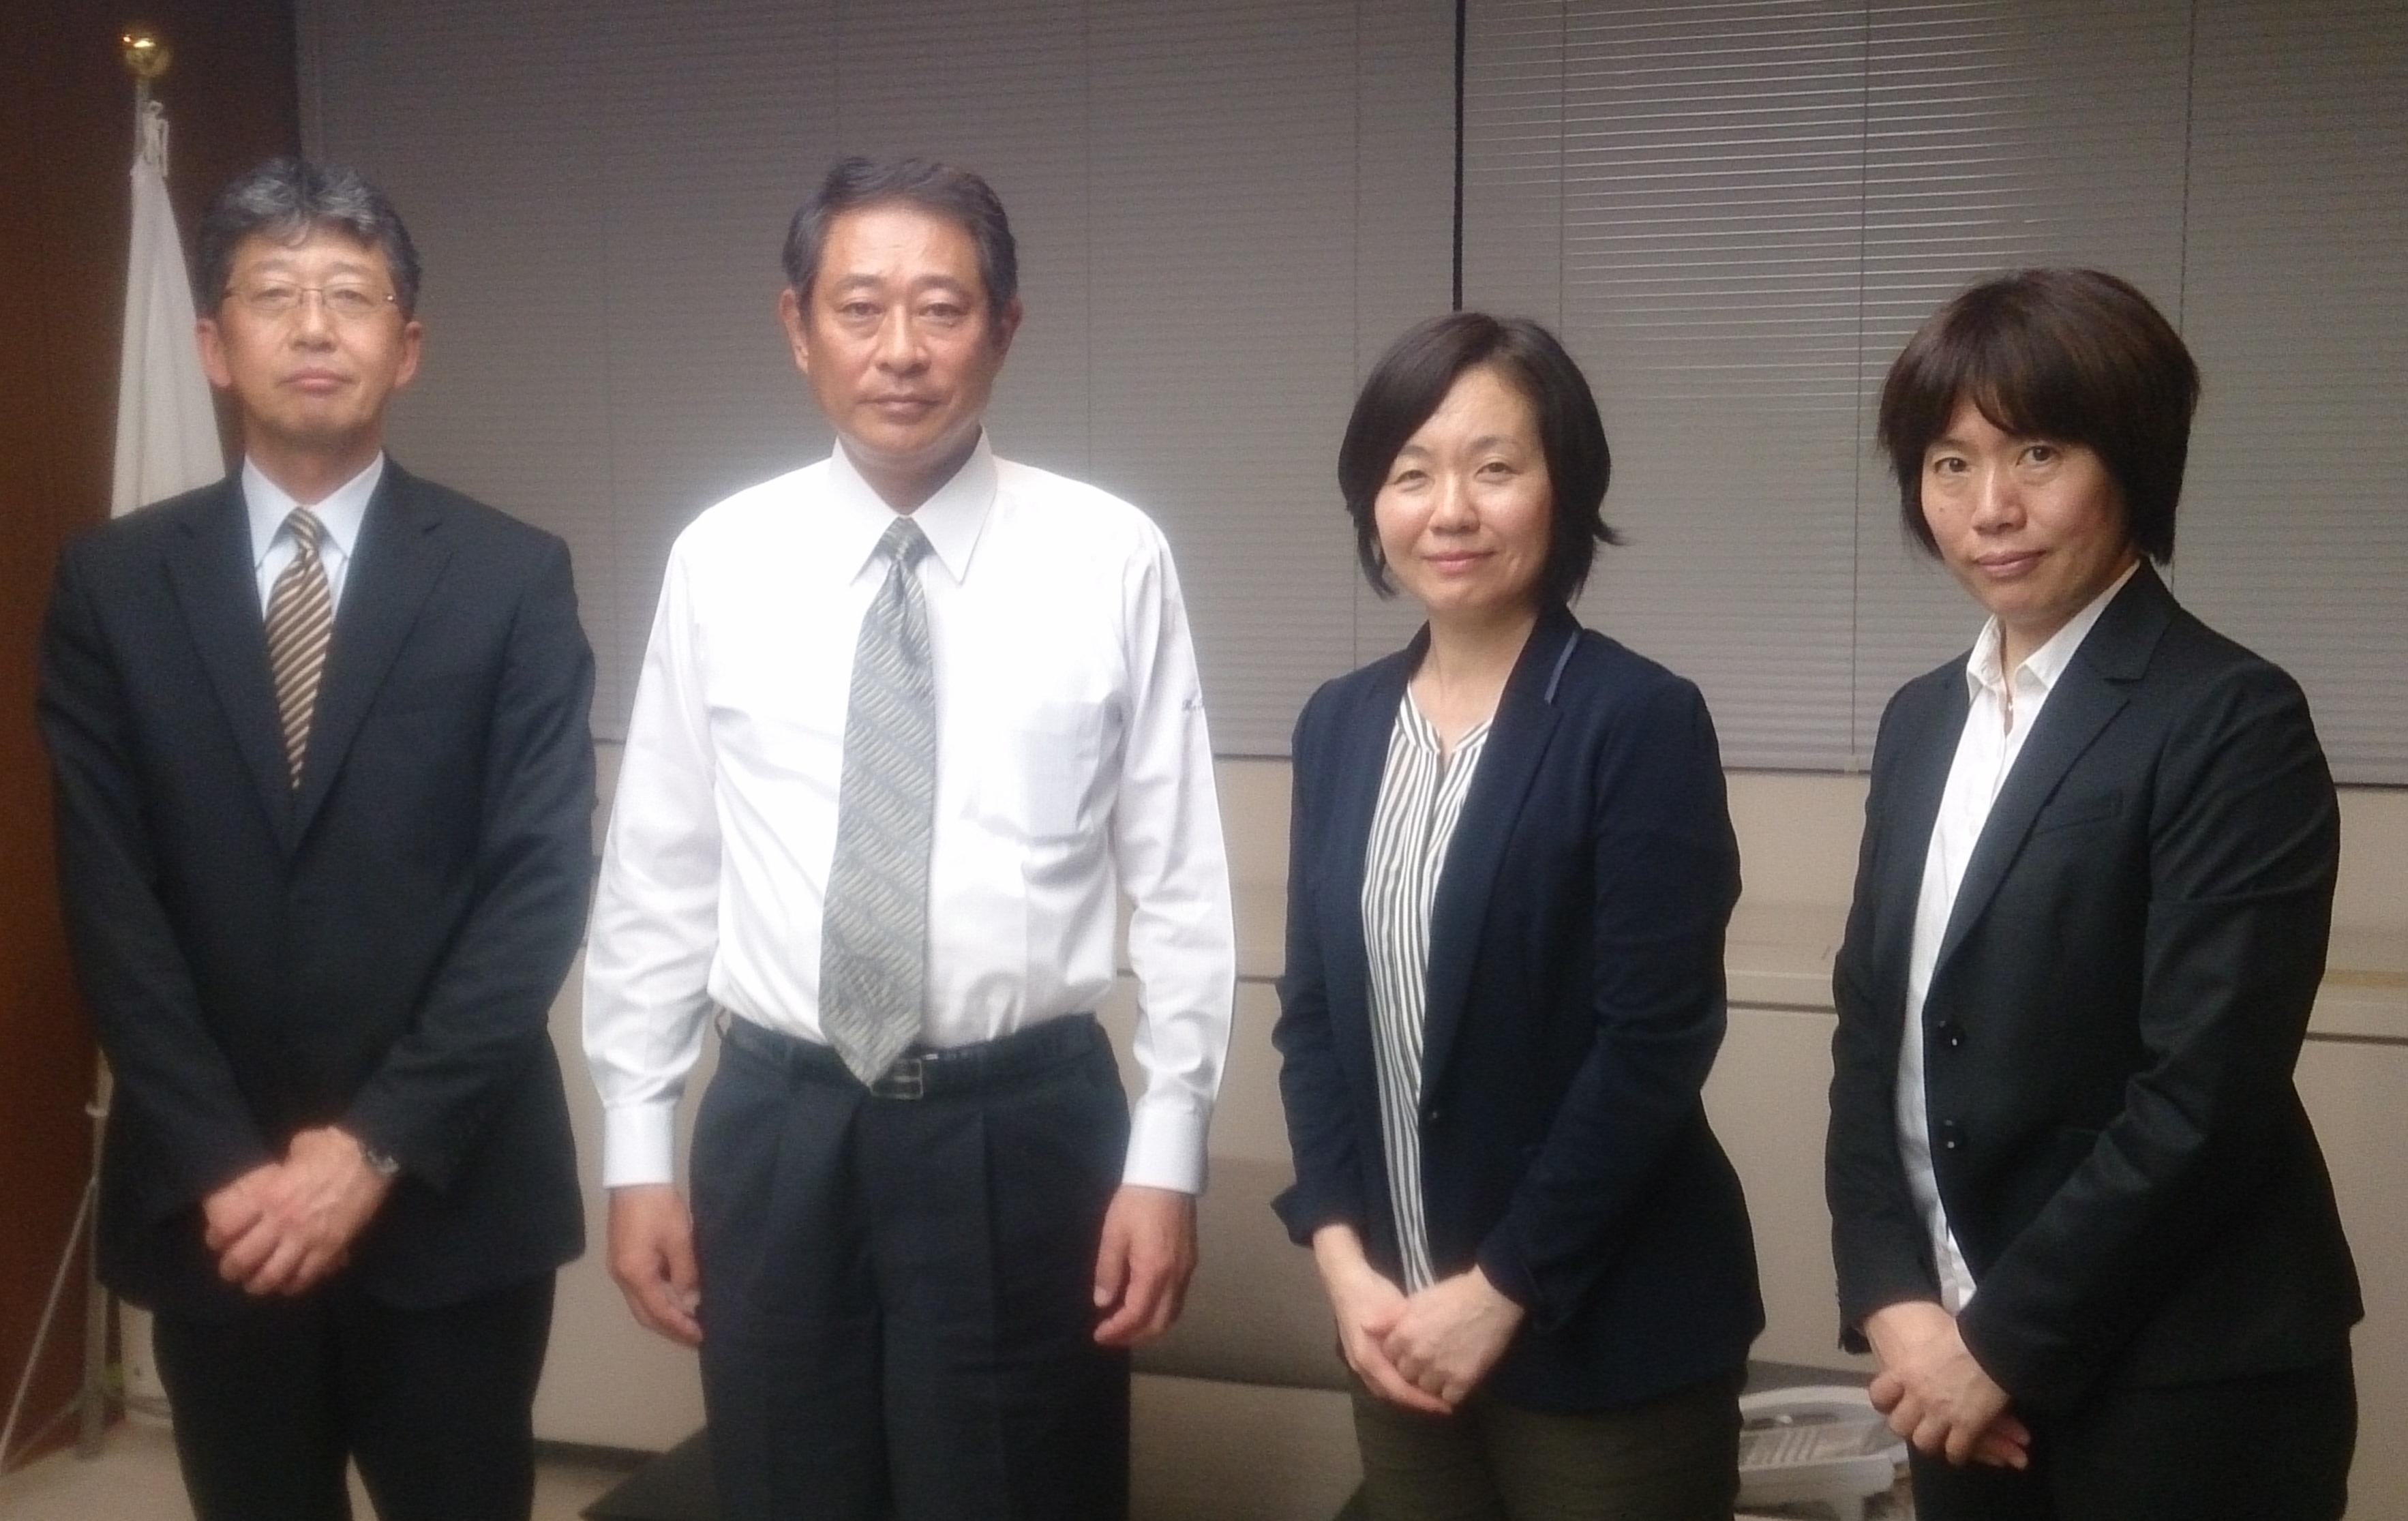 左から庭野理事長、田中区長、奥山組合員常任理事、加藤組合員理事